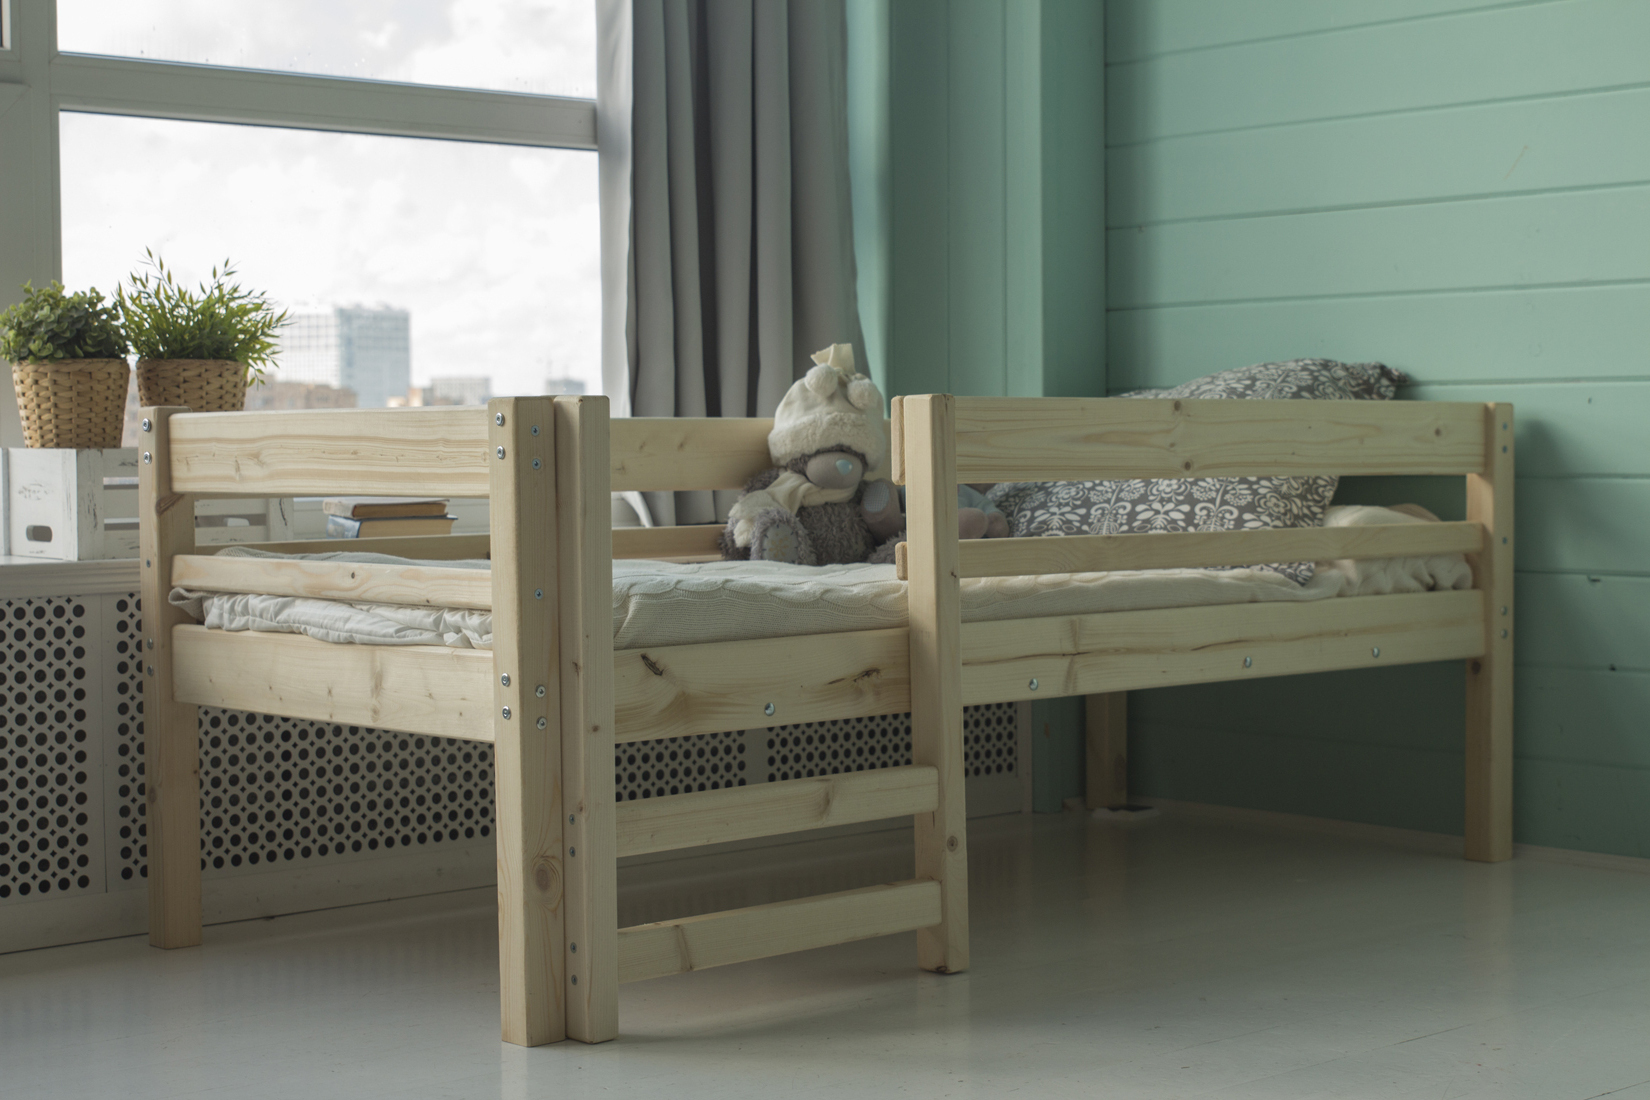 производство деревянных детских кроватей